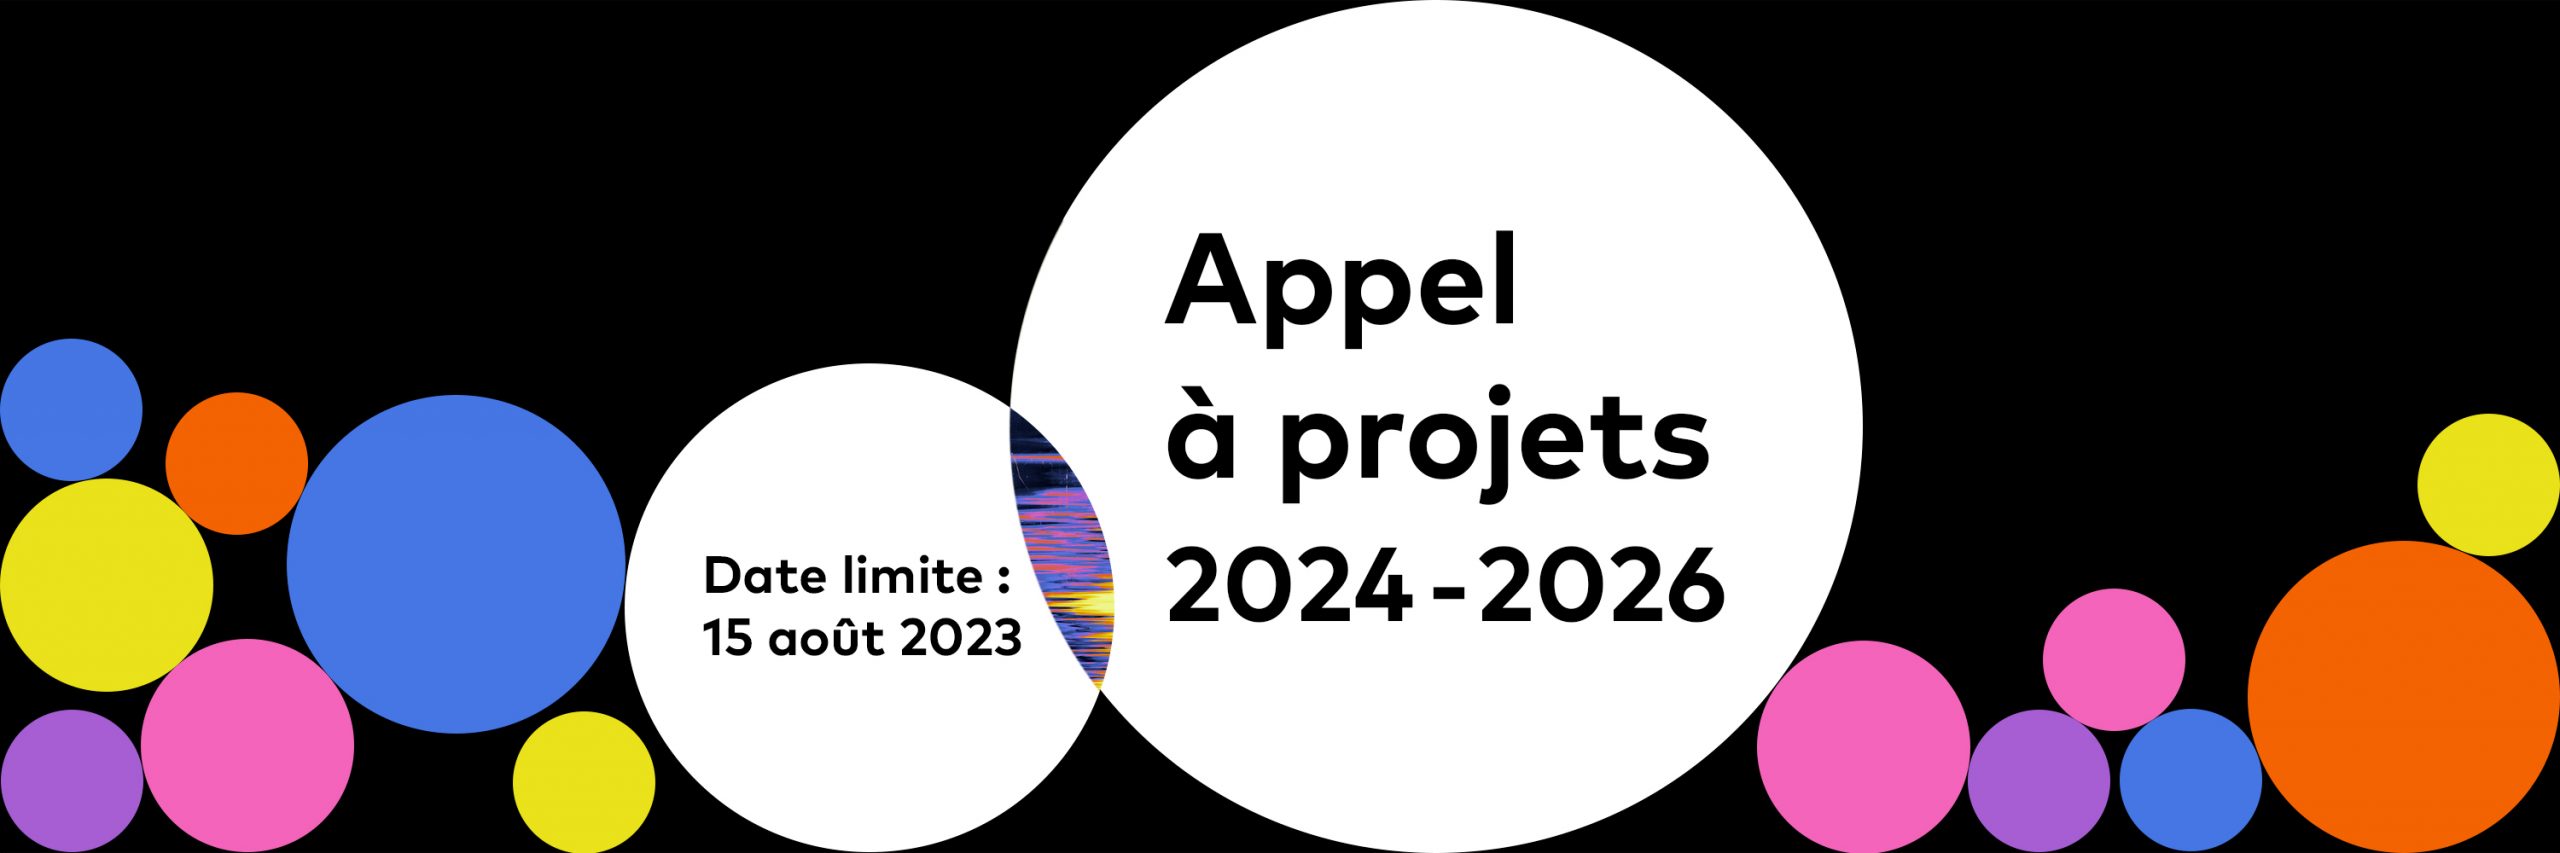 Appel à projets 2024-2026 | Date limite : 15 août 2023